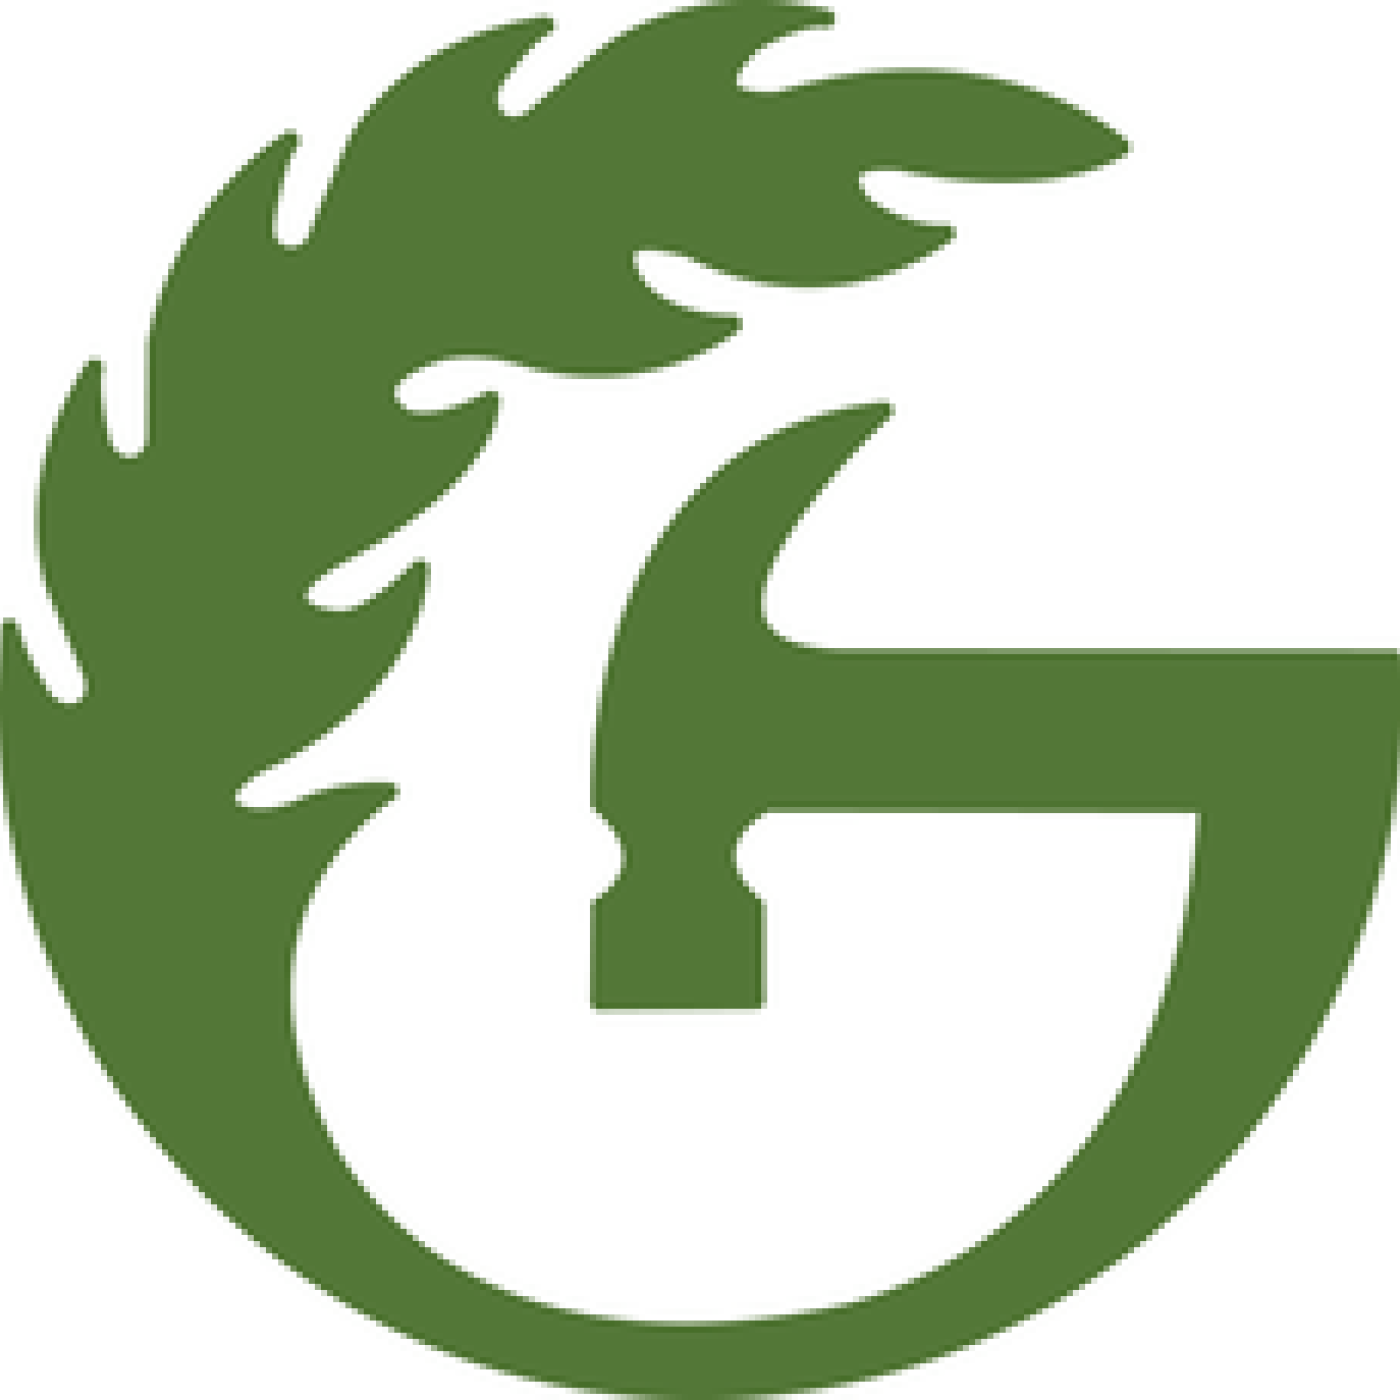 Green Hammer logo